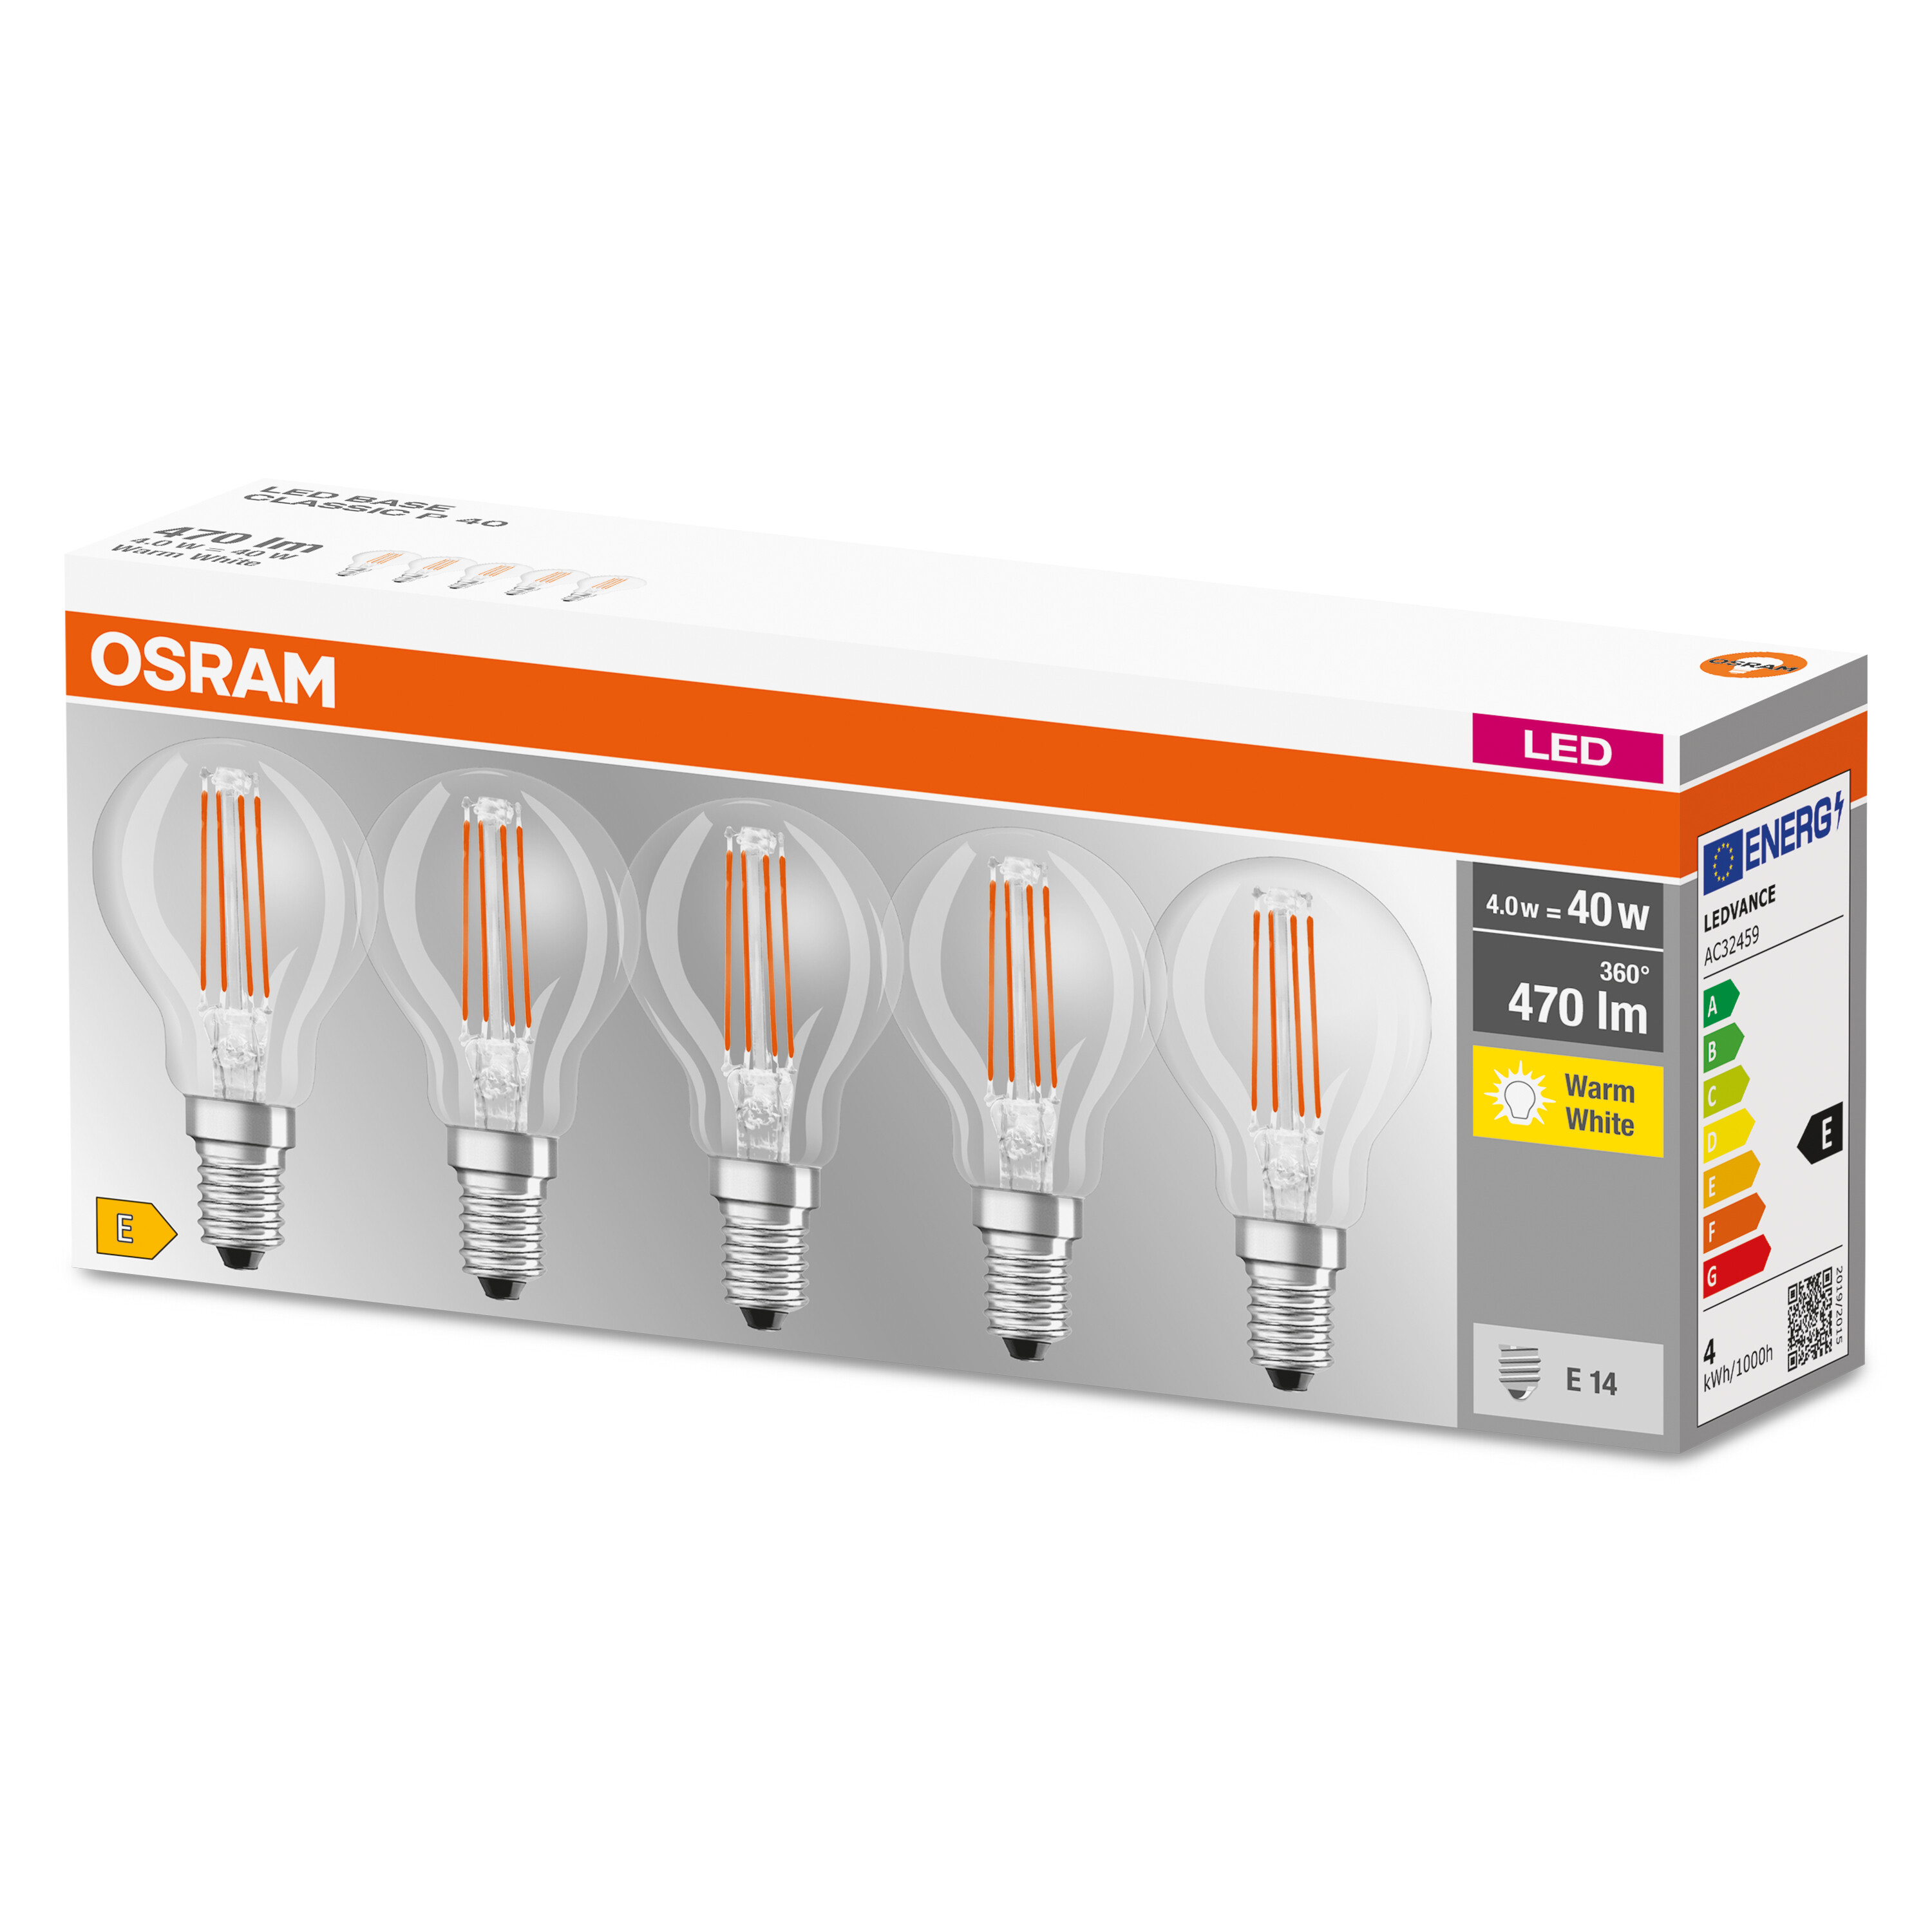 P LED OSRAM  BASE LED 470 CLASSIC Lampe Lumen Warmweiß